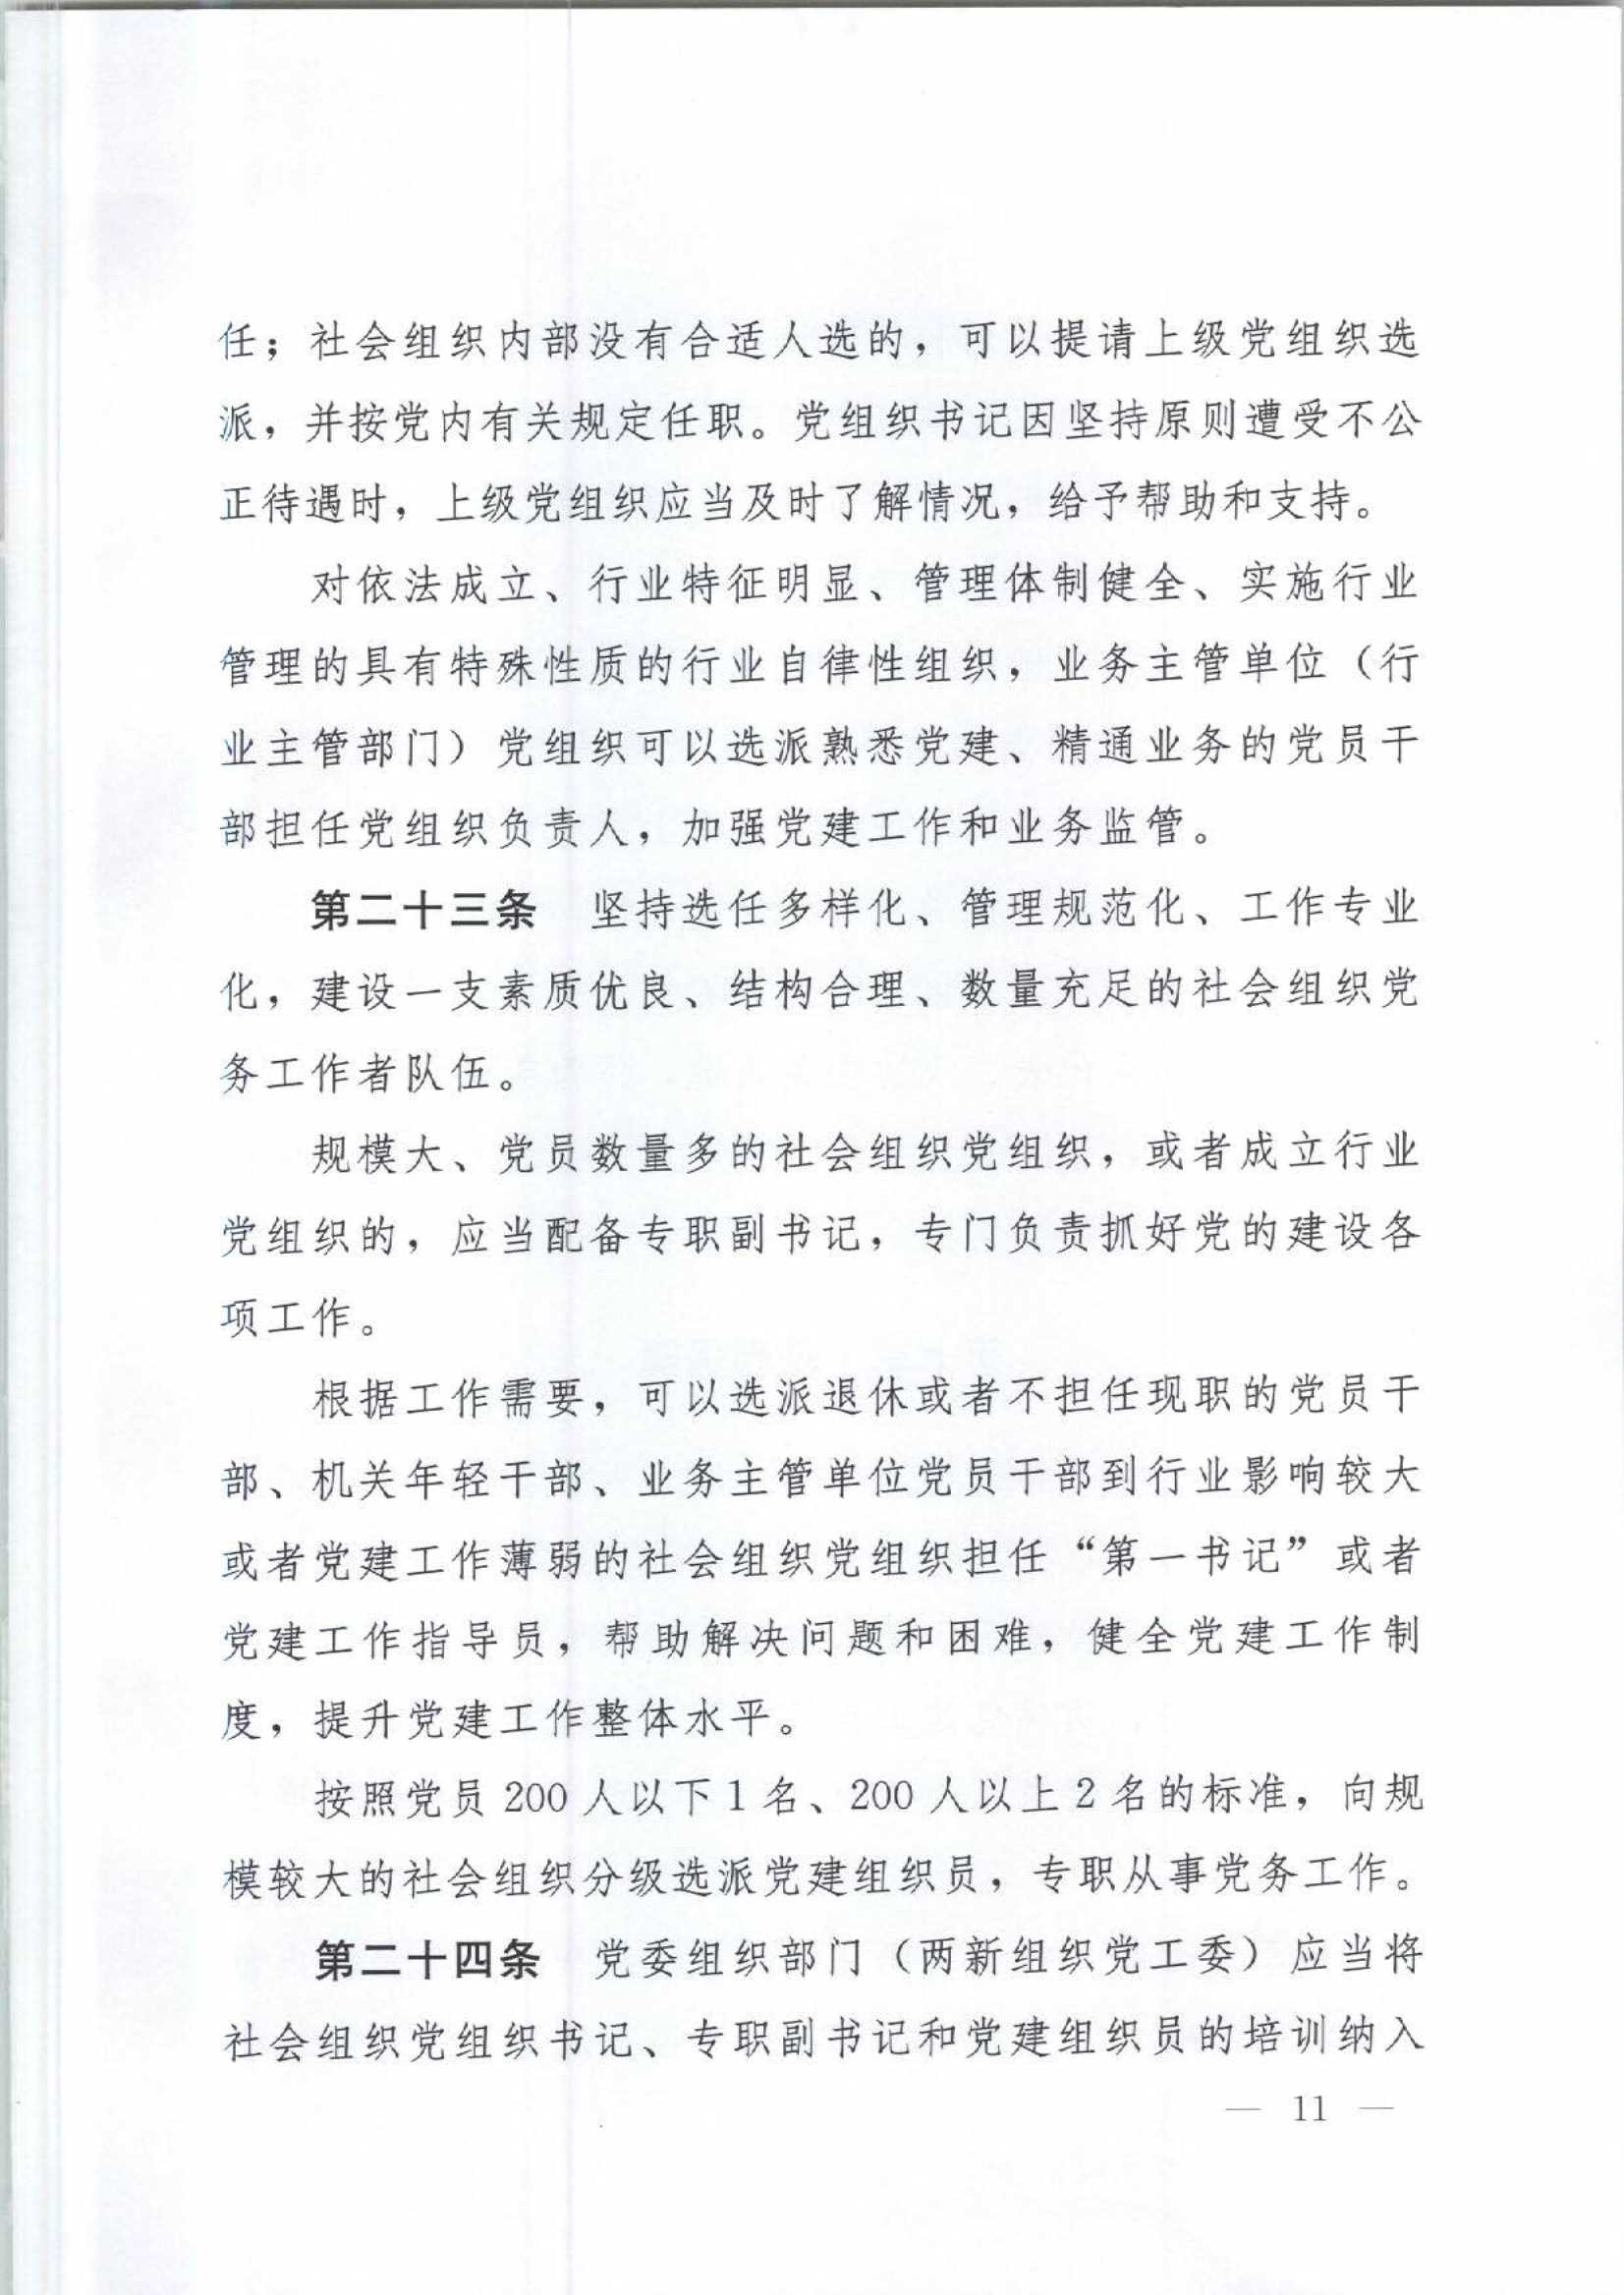 4.深圳市社会组织党的建设工作规定_11.Jpeg